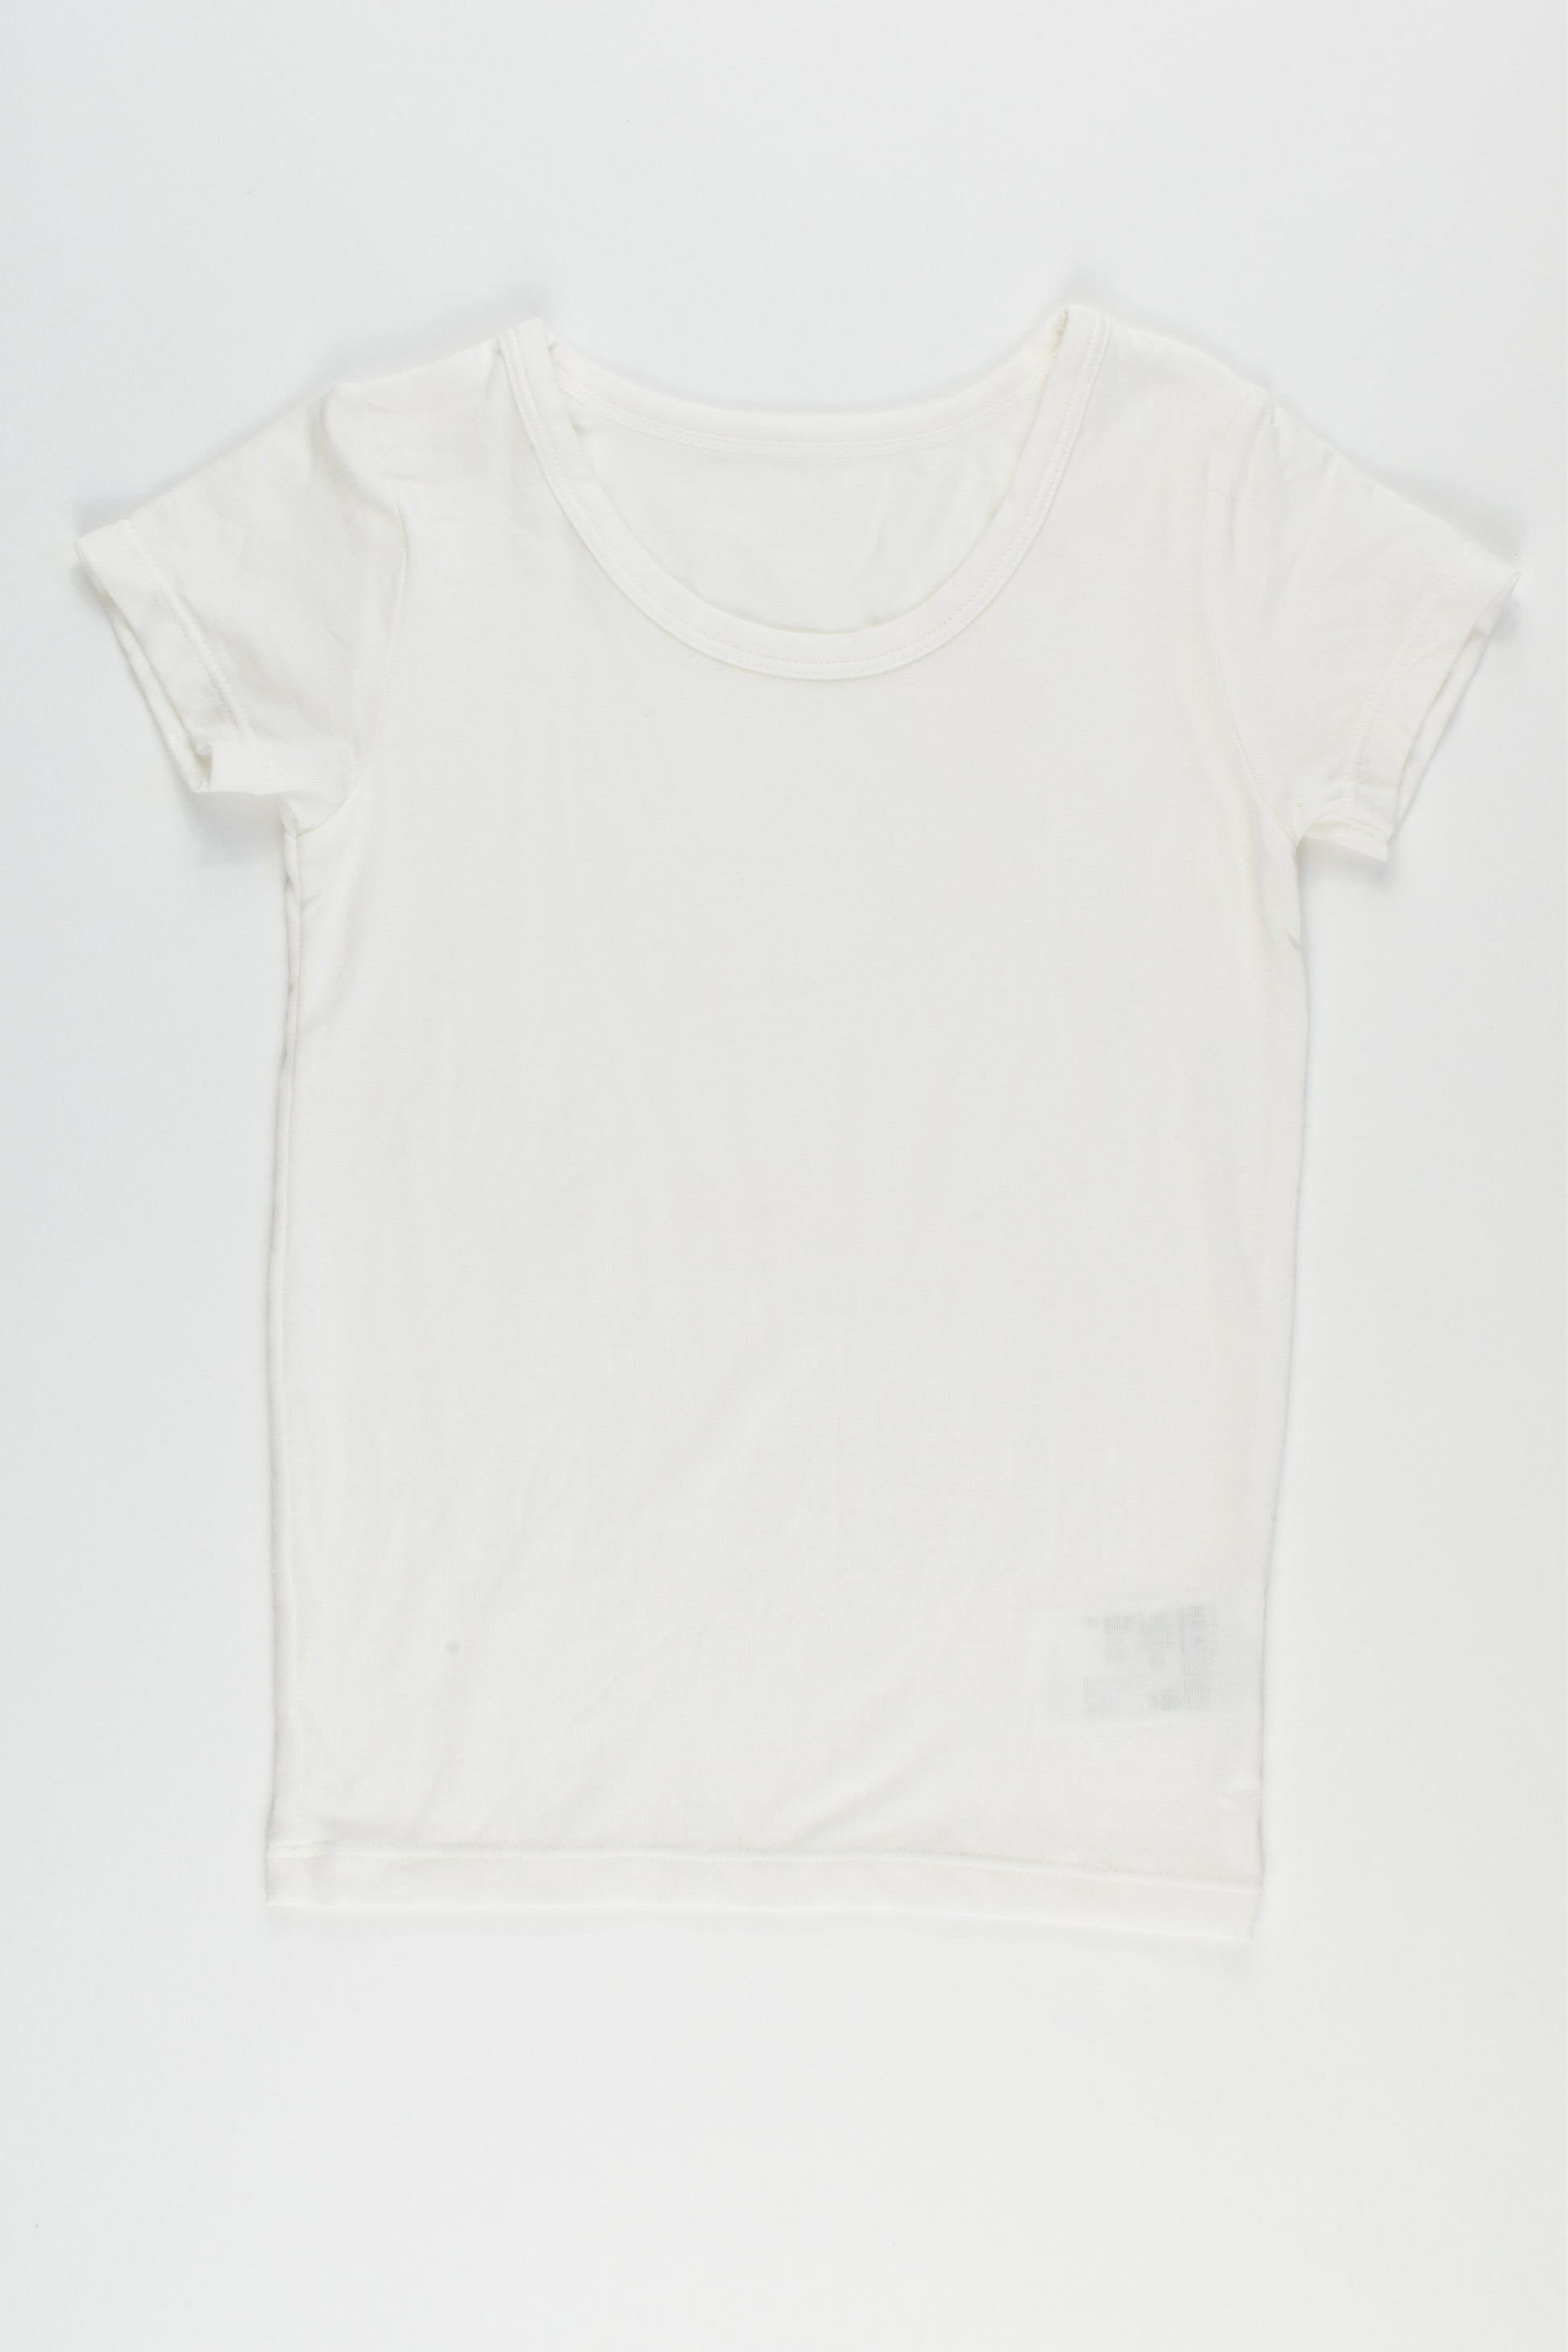 NEW Uniqlo Baby Size 2 Heattech t-shirt